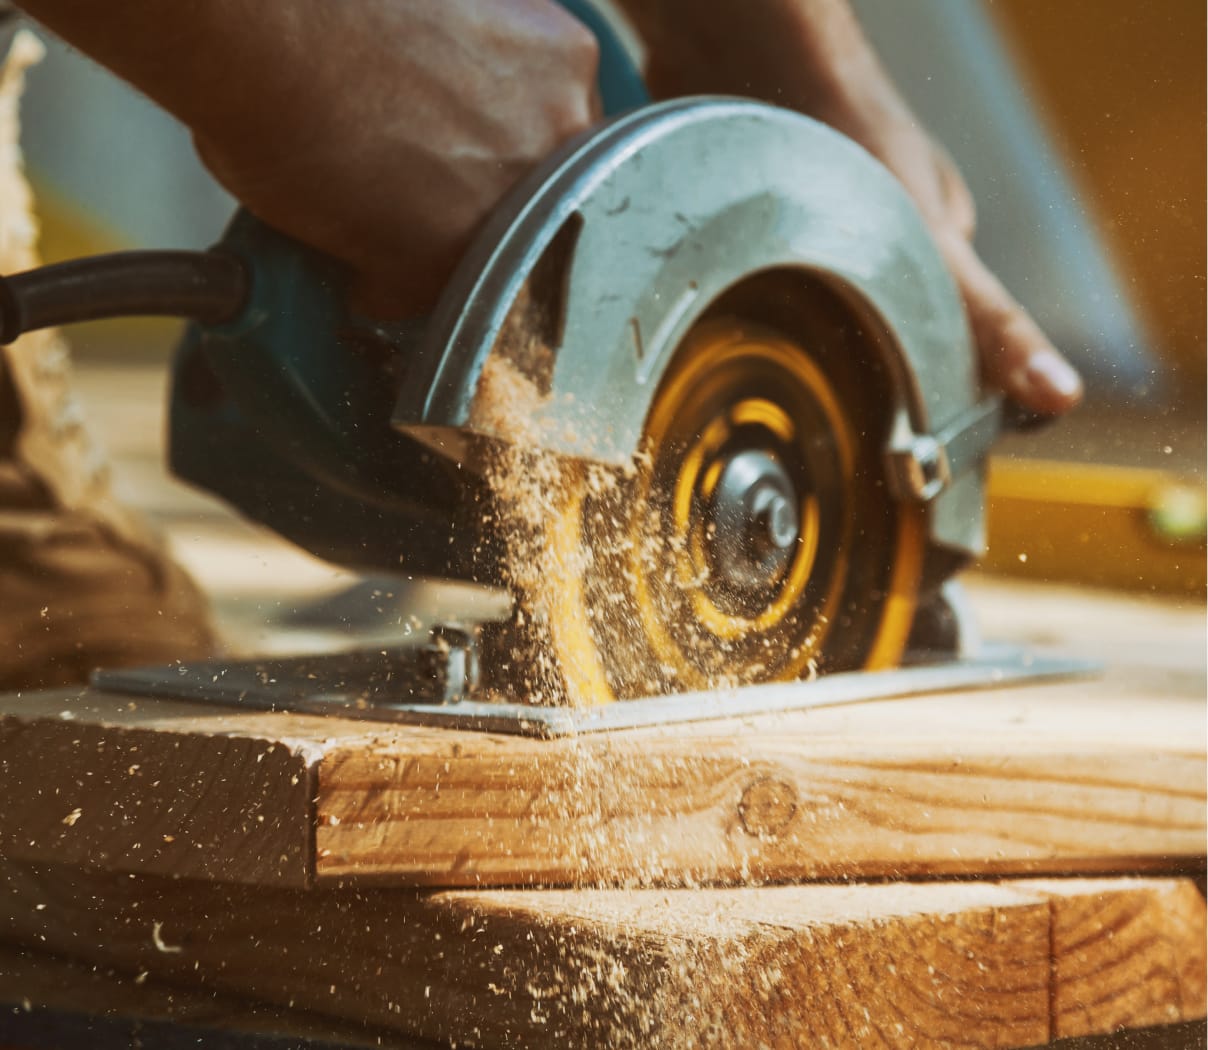 Carpenter cutting lumber with a circular saw